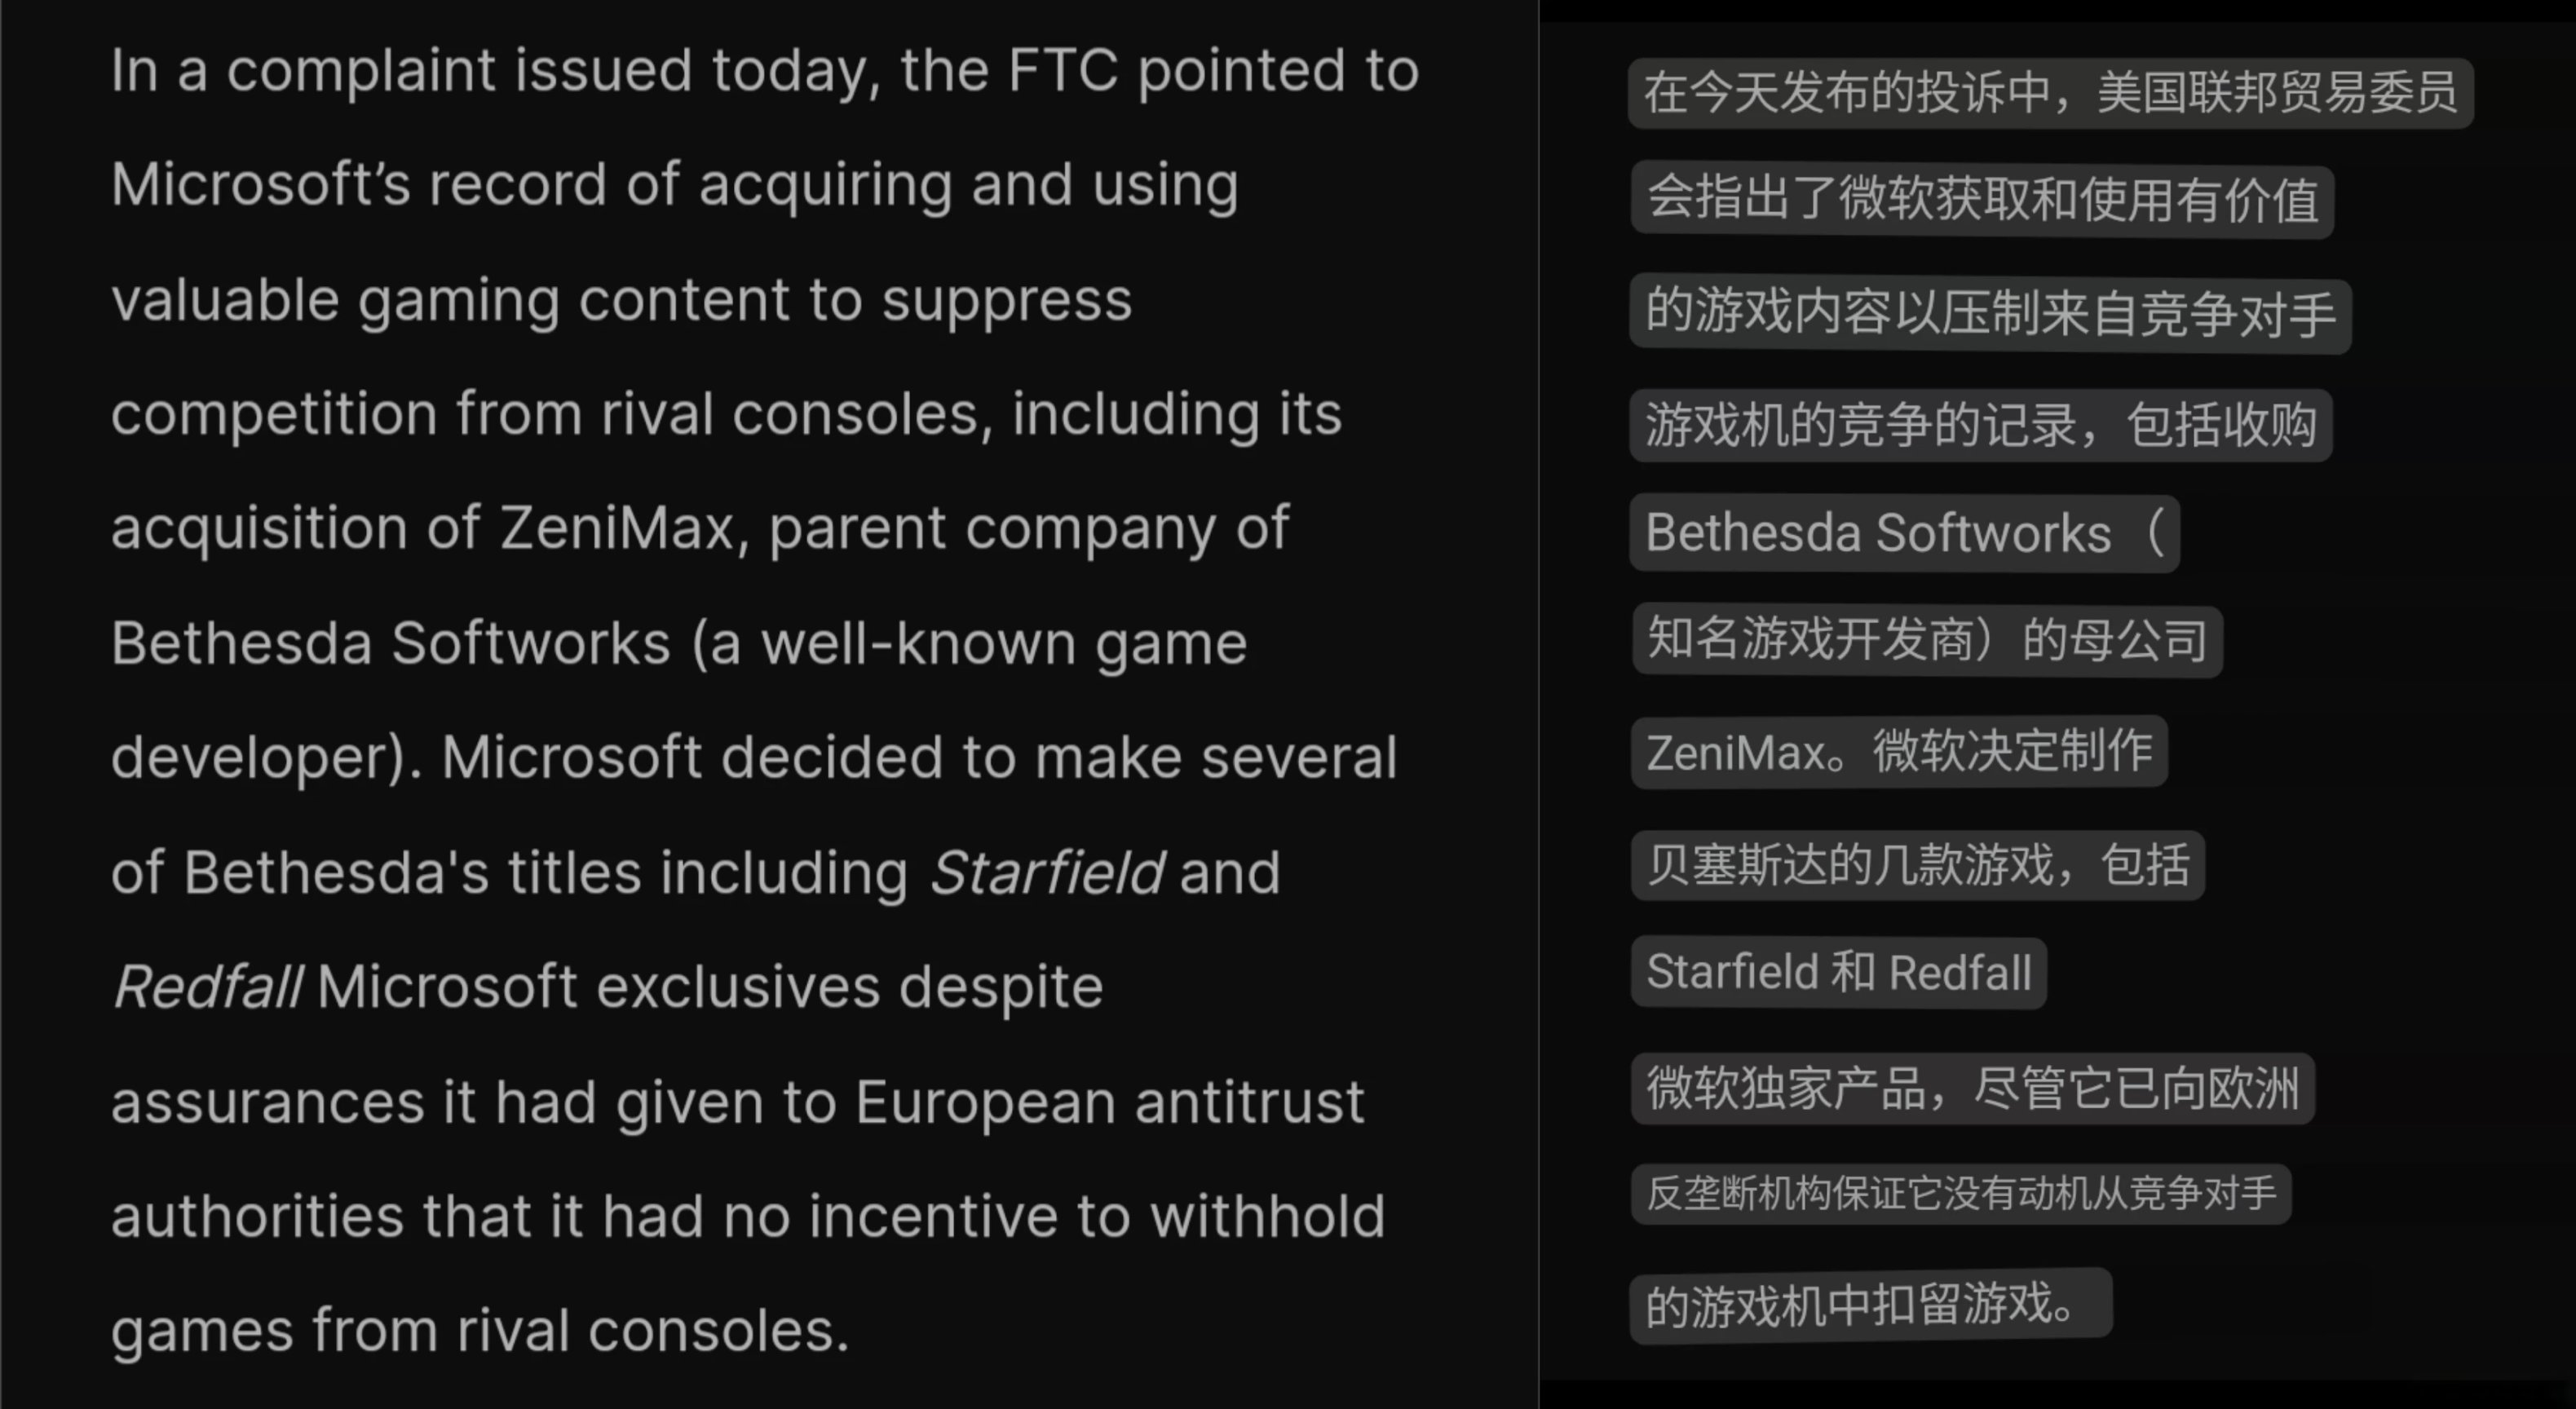 【PC遊戲】FTC宣佈起訴微軟,歐盟委員會就美國FTC起訴微軟表態-第1張